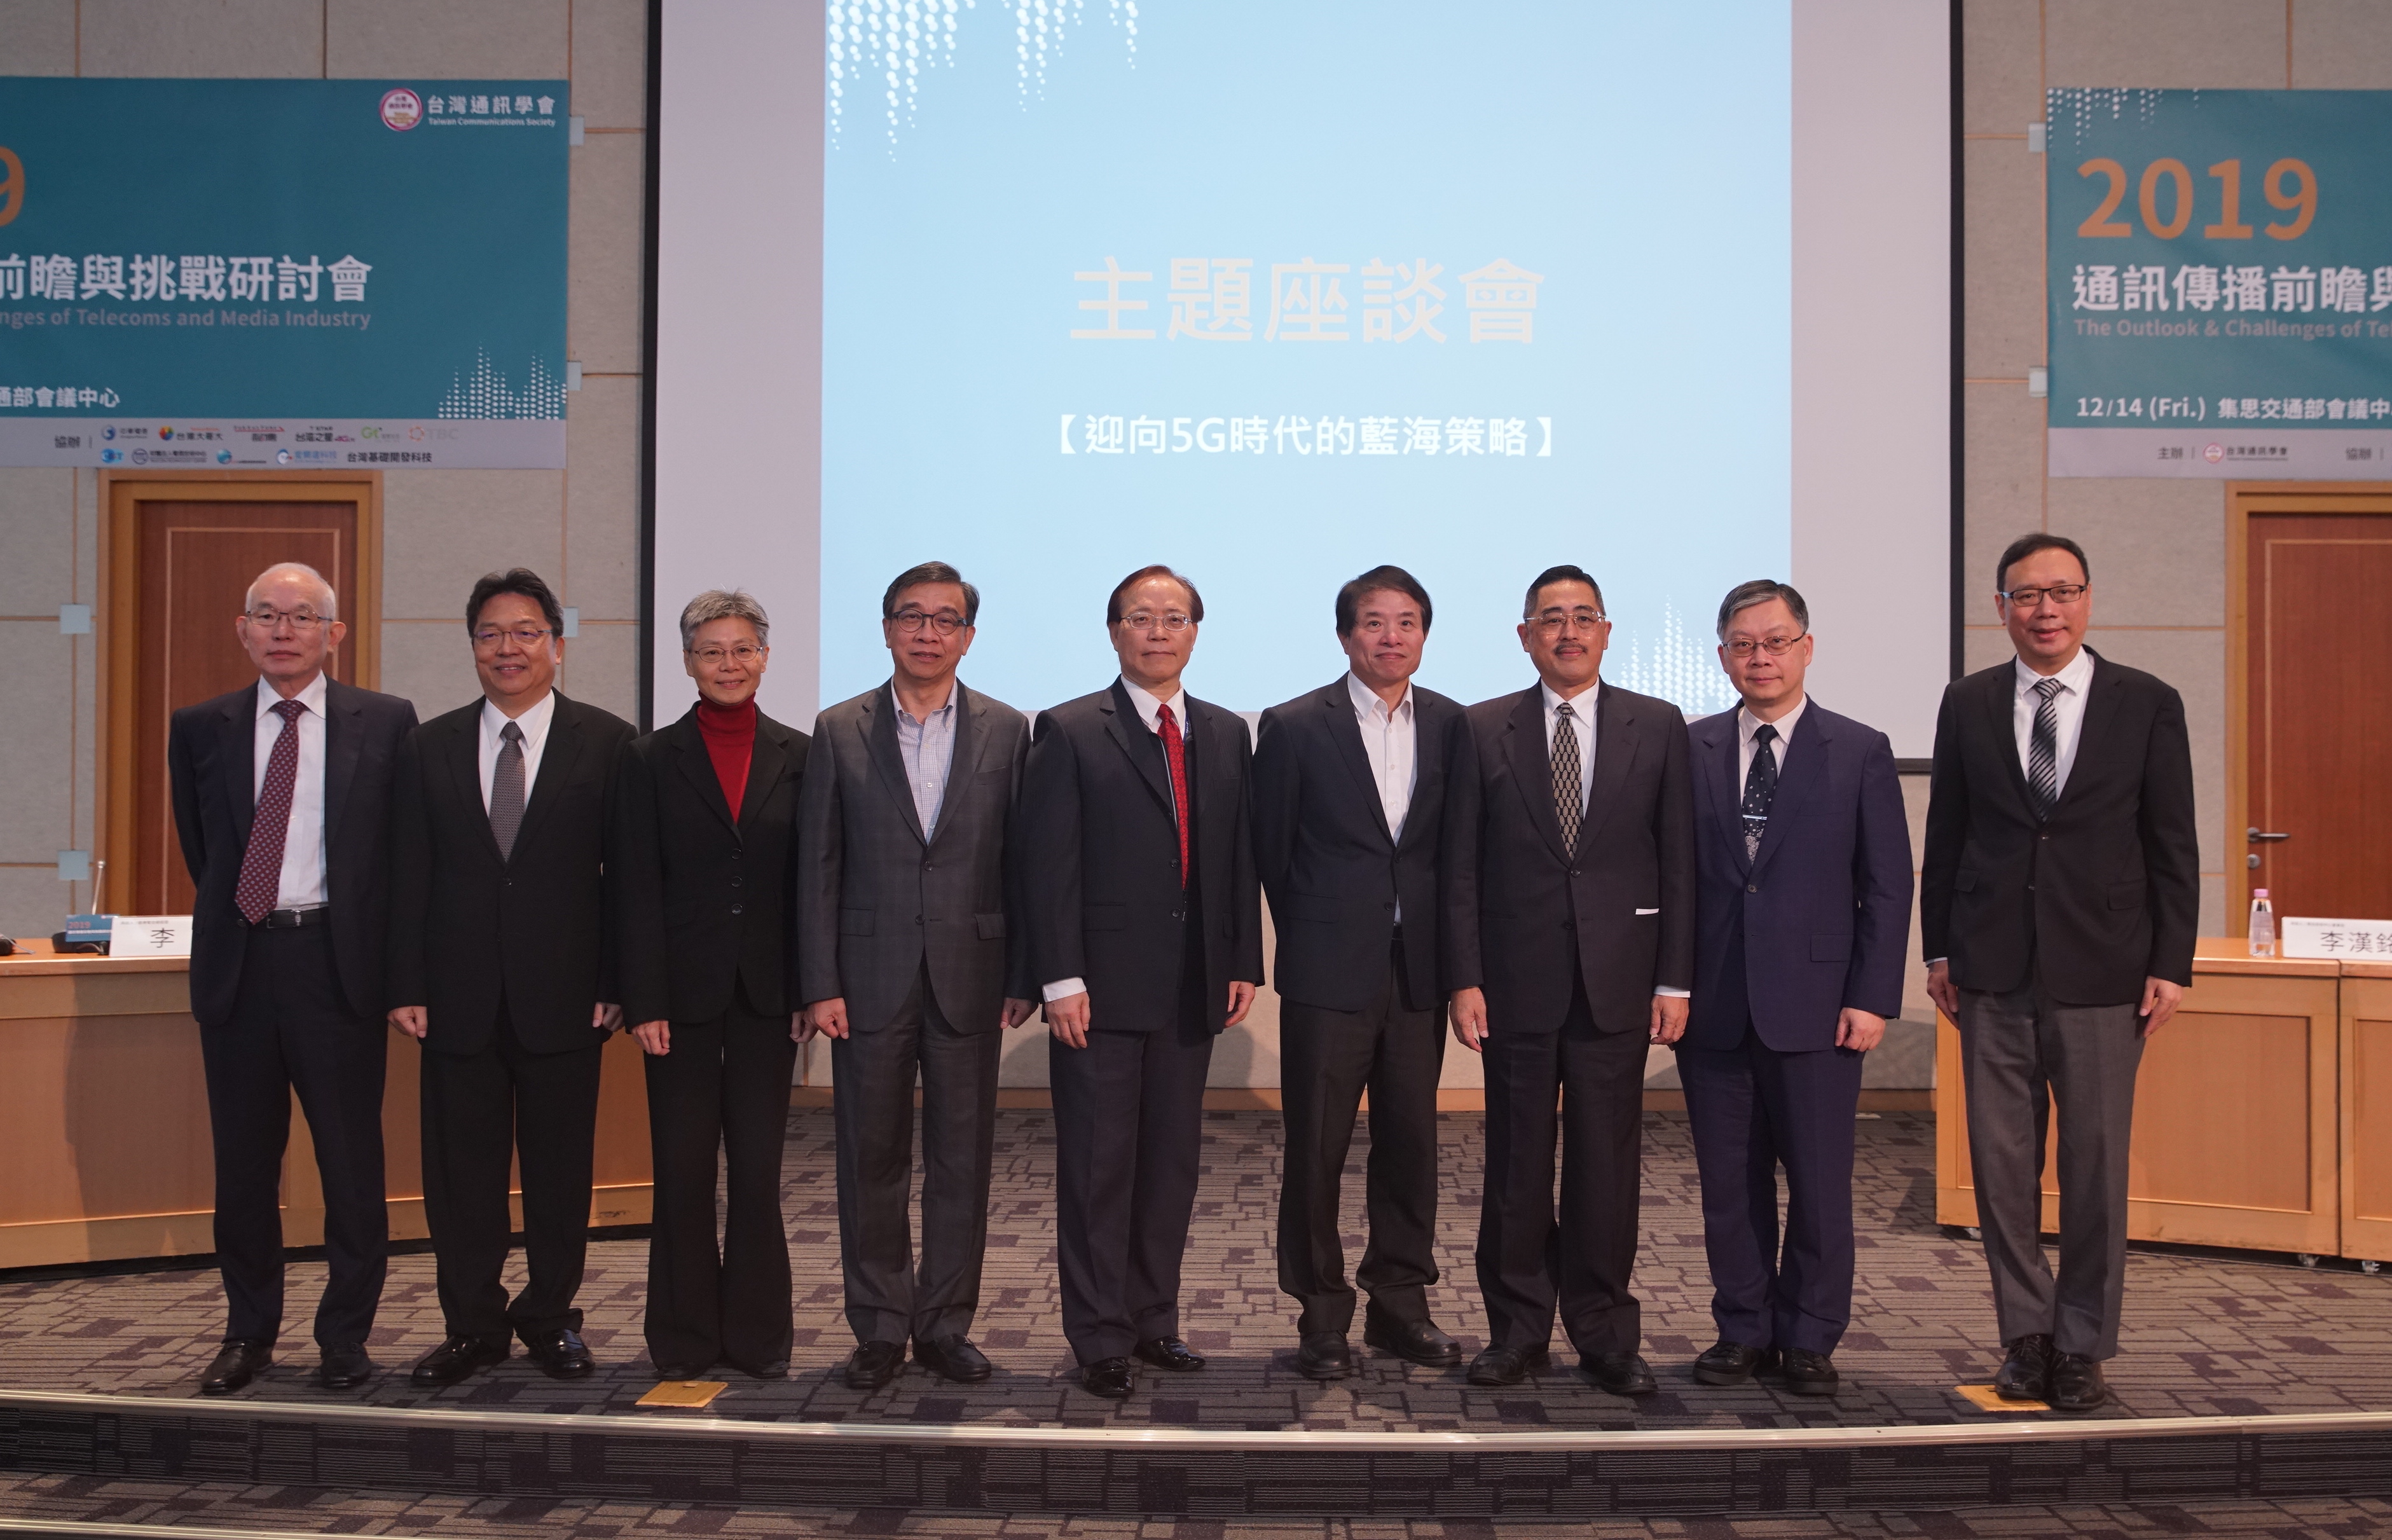 台灣通訊學會1214舉辦「2019通訊傳播前瞻與挑戰研討會」 五大電信業者座談會合影